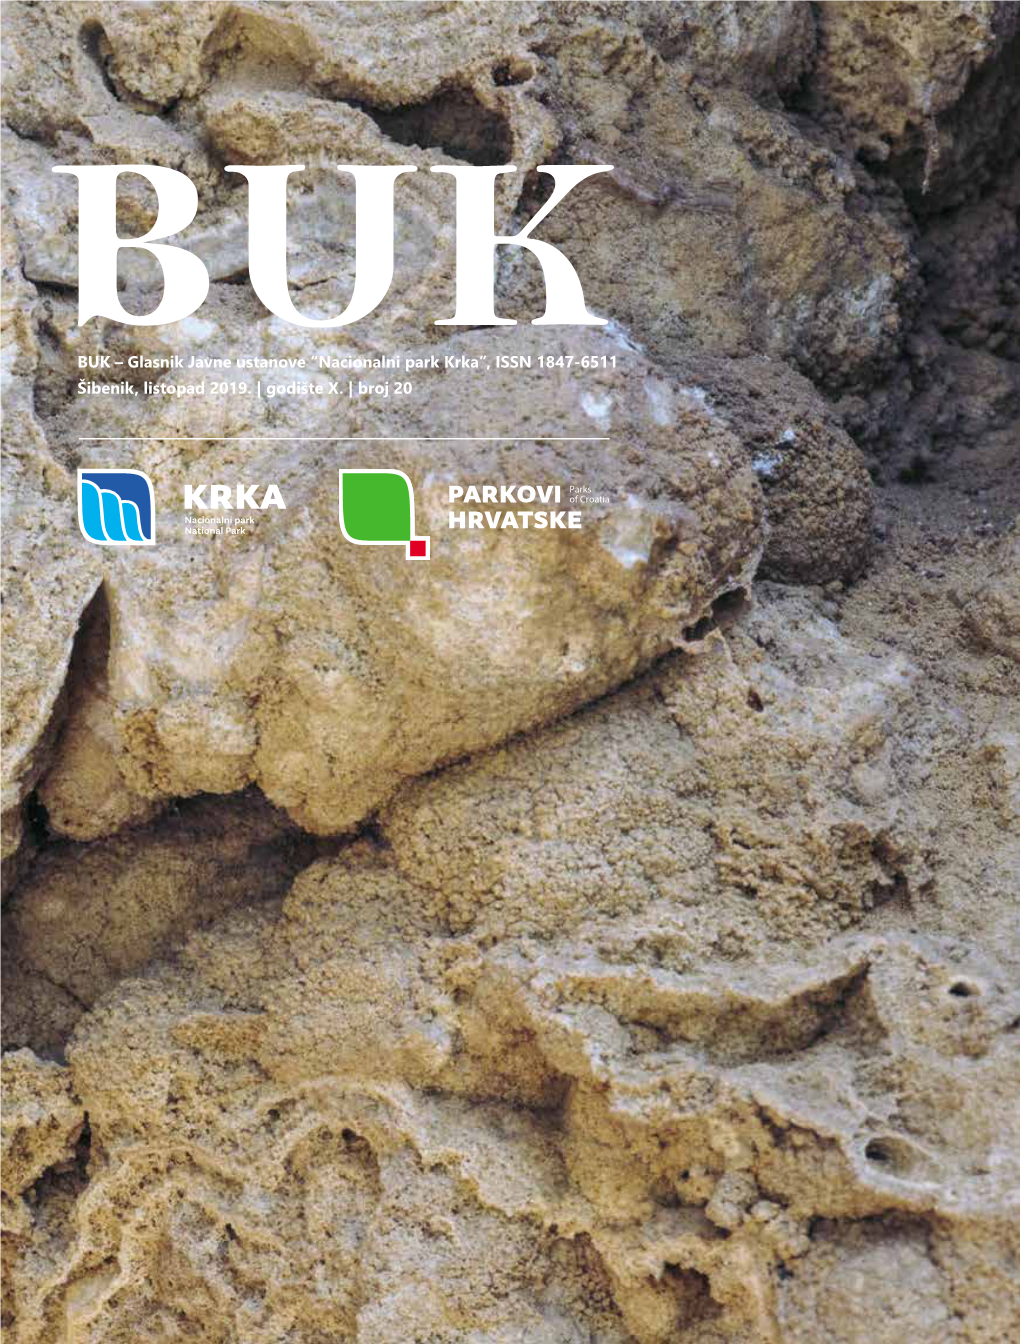 BUK – Glasnik Javne Ustanove “Nacionalni Park Krka”, ISSN 1847-6511 Bukšibenik, Listopad 2019